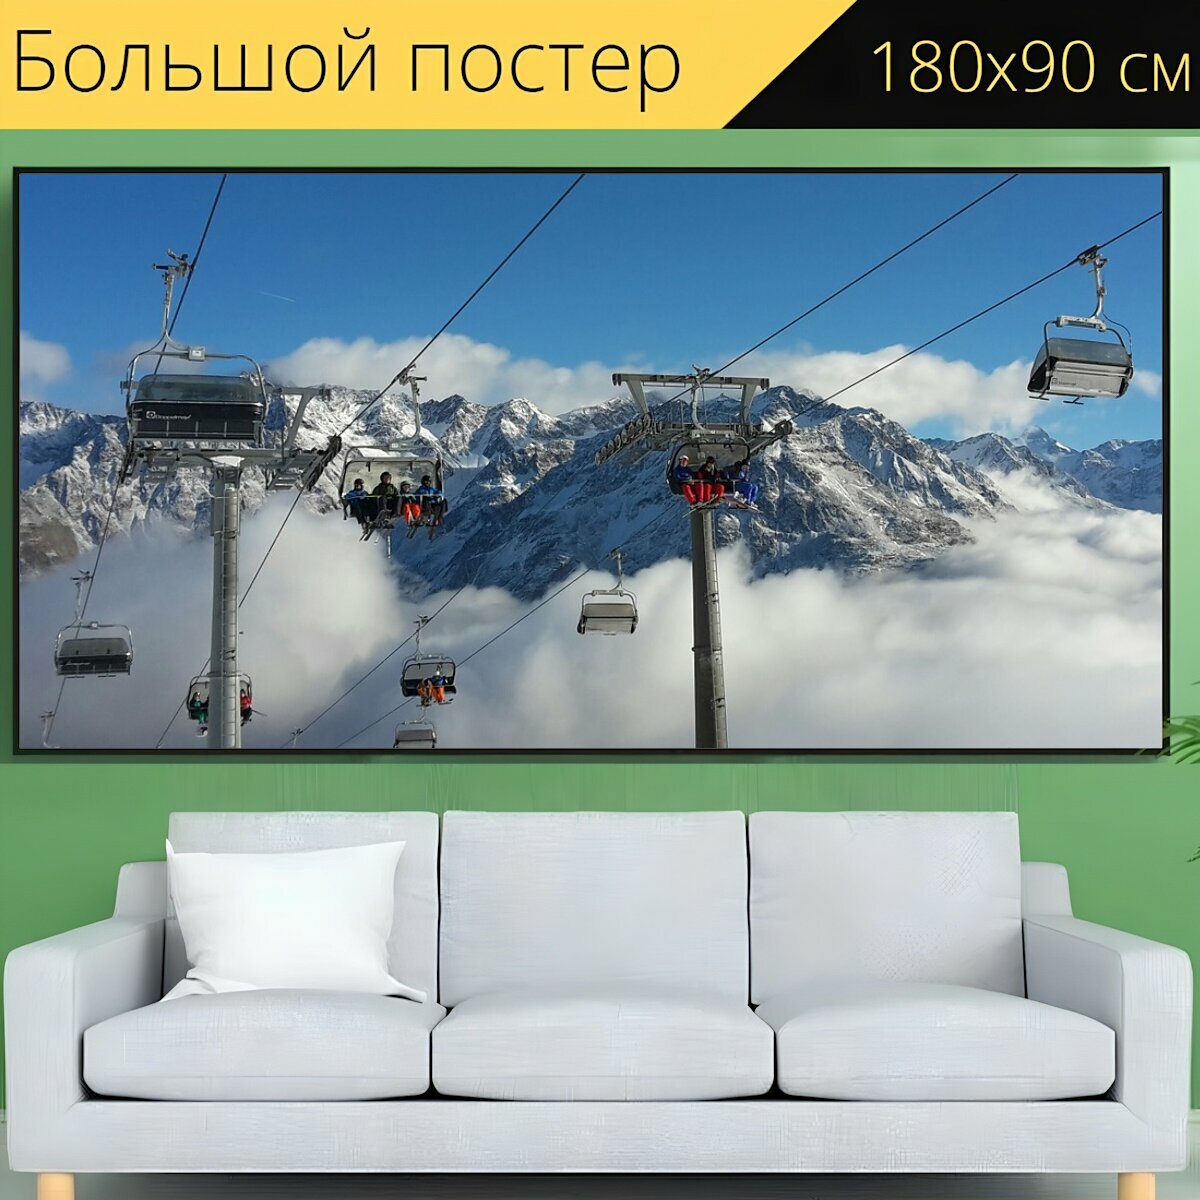 Большой постер "Альпы, лыжная зона, кресельная канатная дорога" 180 x 90 см. для интерьера